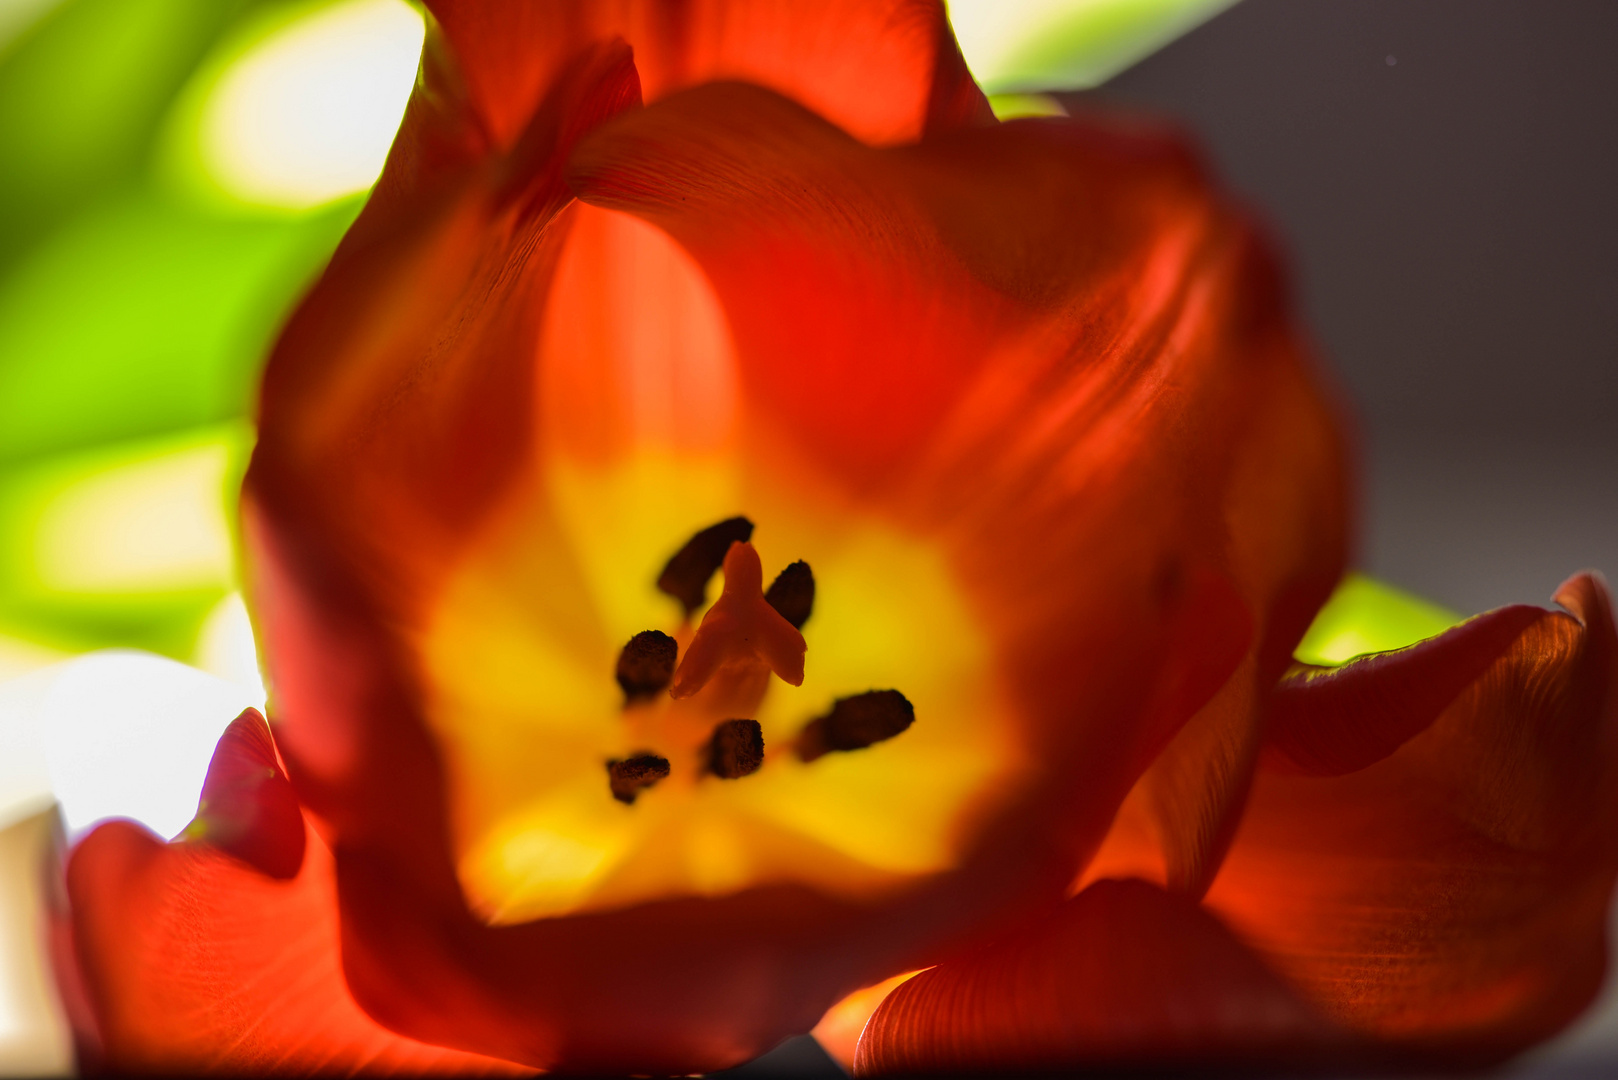 Tulpe im Licht